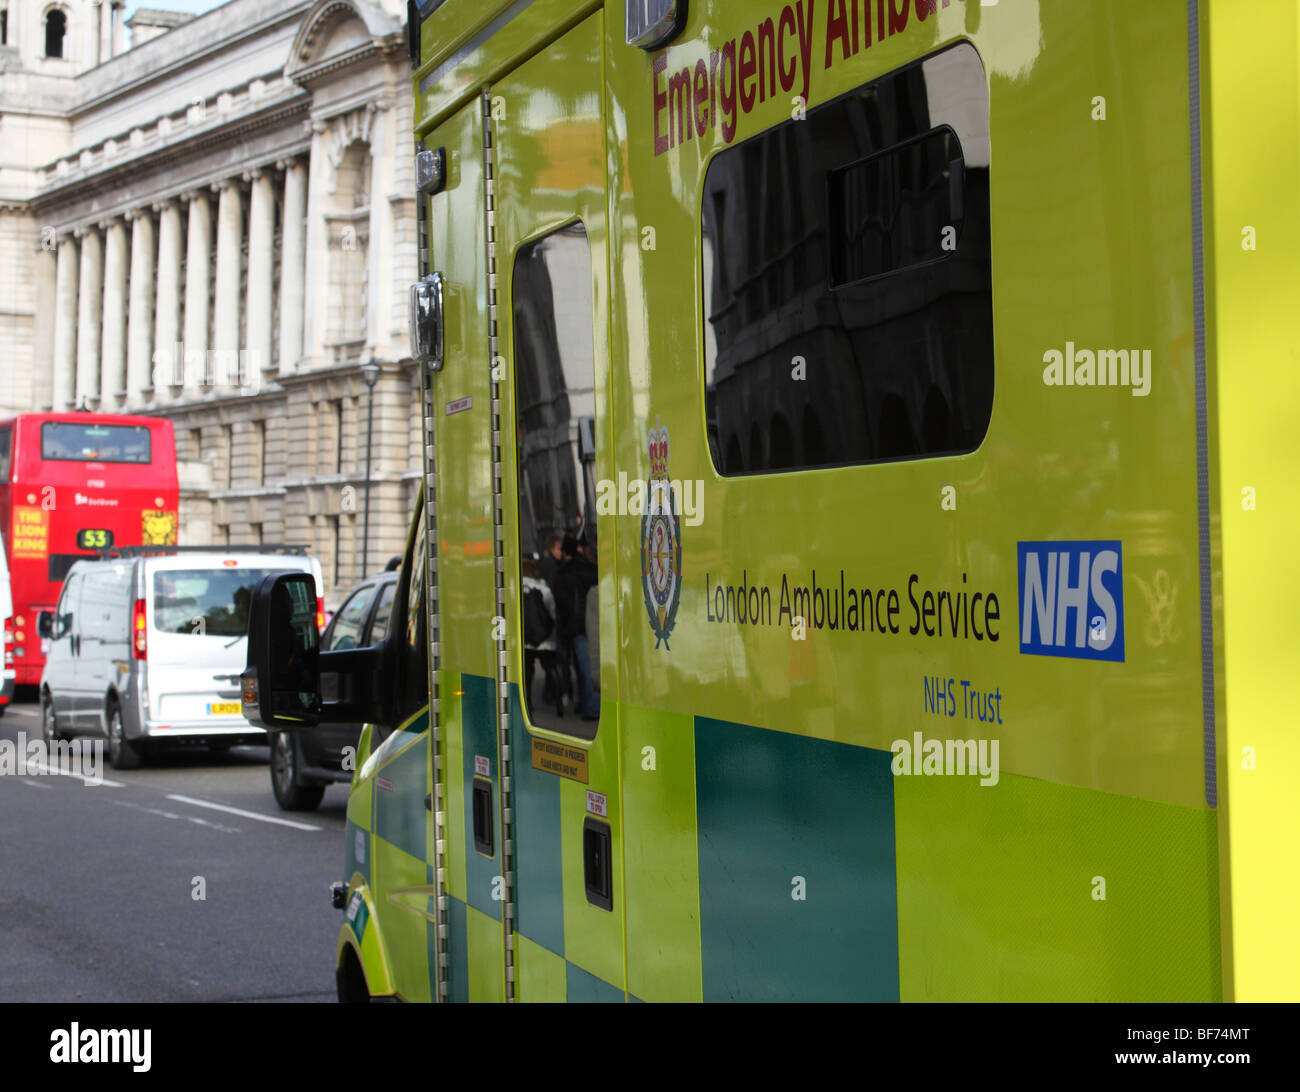 Ein London Ambulance Service Notfallmaßnahmen Fahrzeug auf einer Londoner Straße. Stockfoto